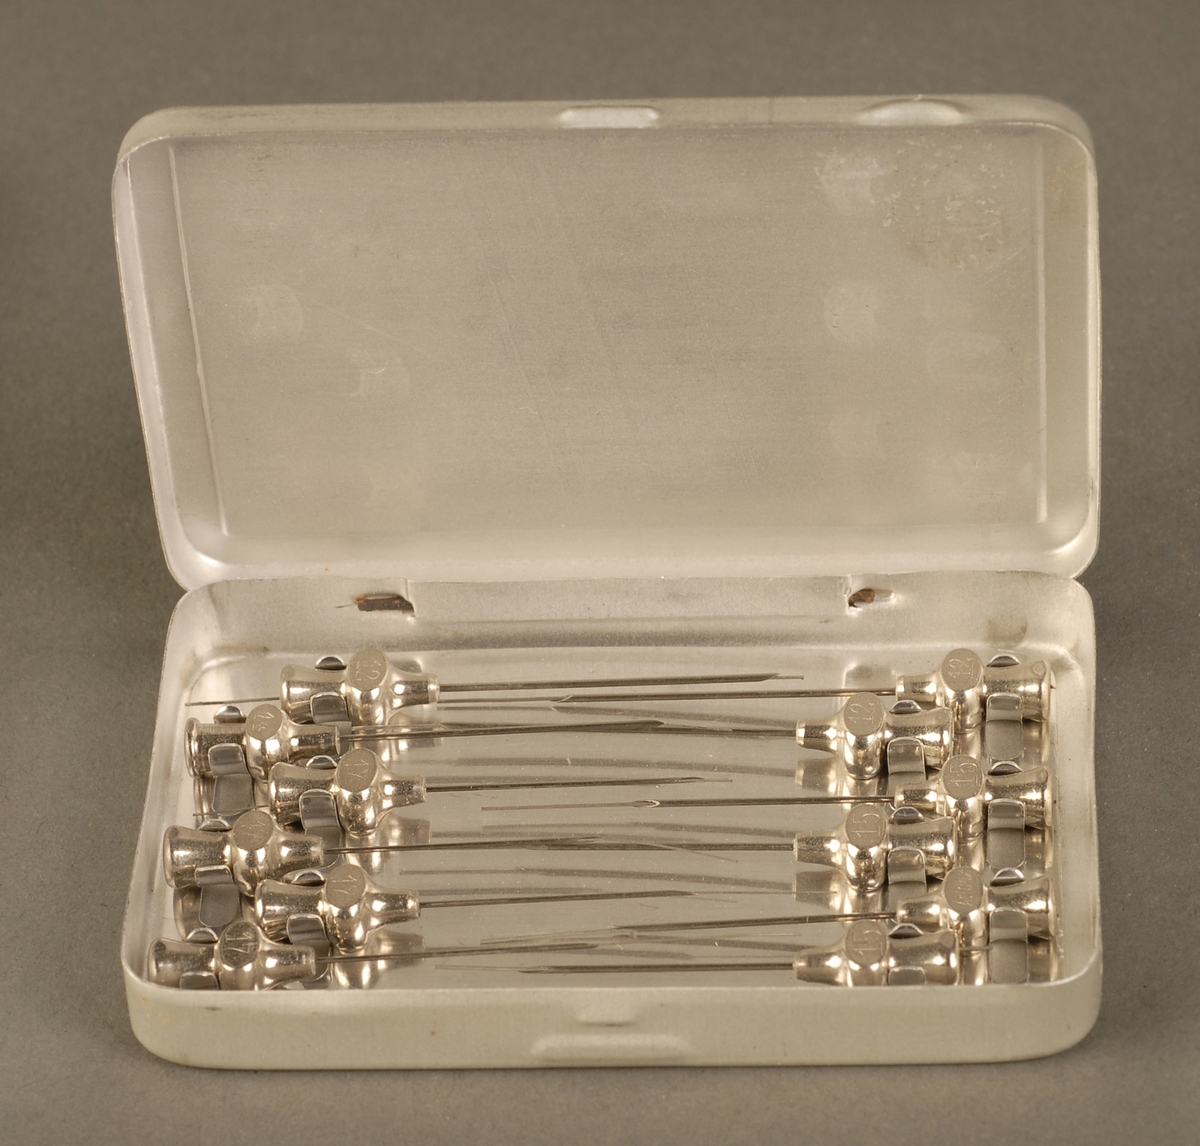 Rektangulær metalleske med hengslet lokk, inneholder 12 kanyler til injeksjonssprøyte